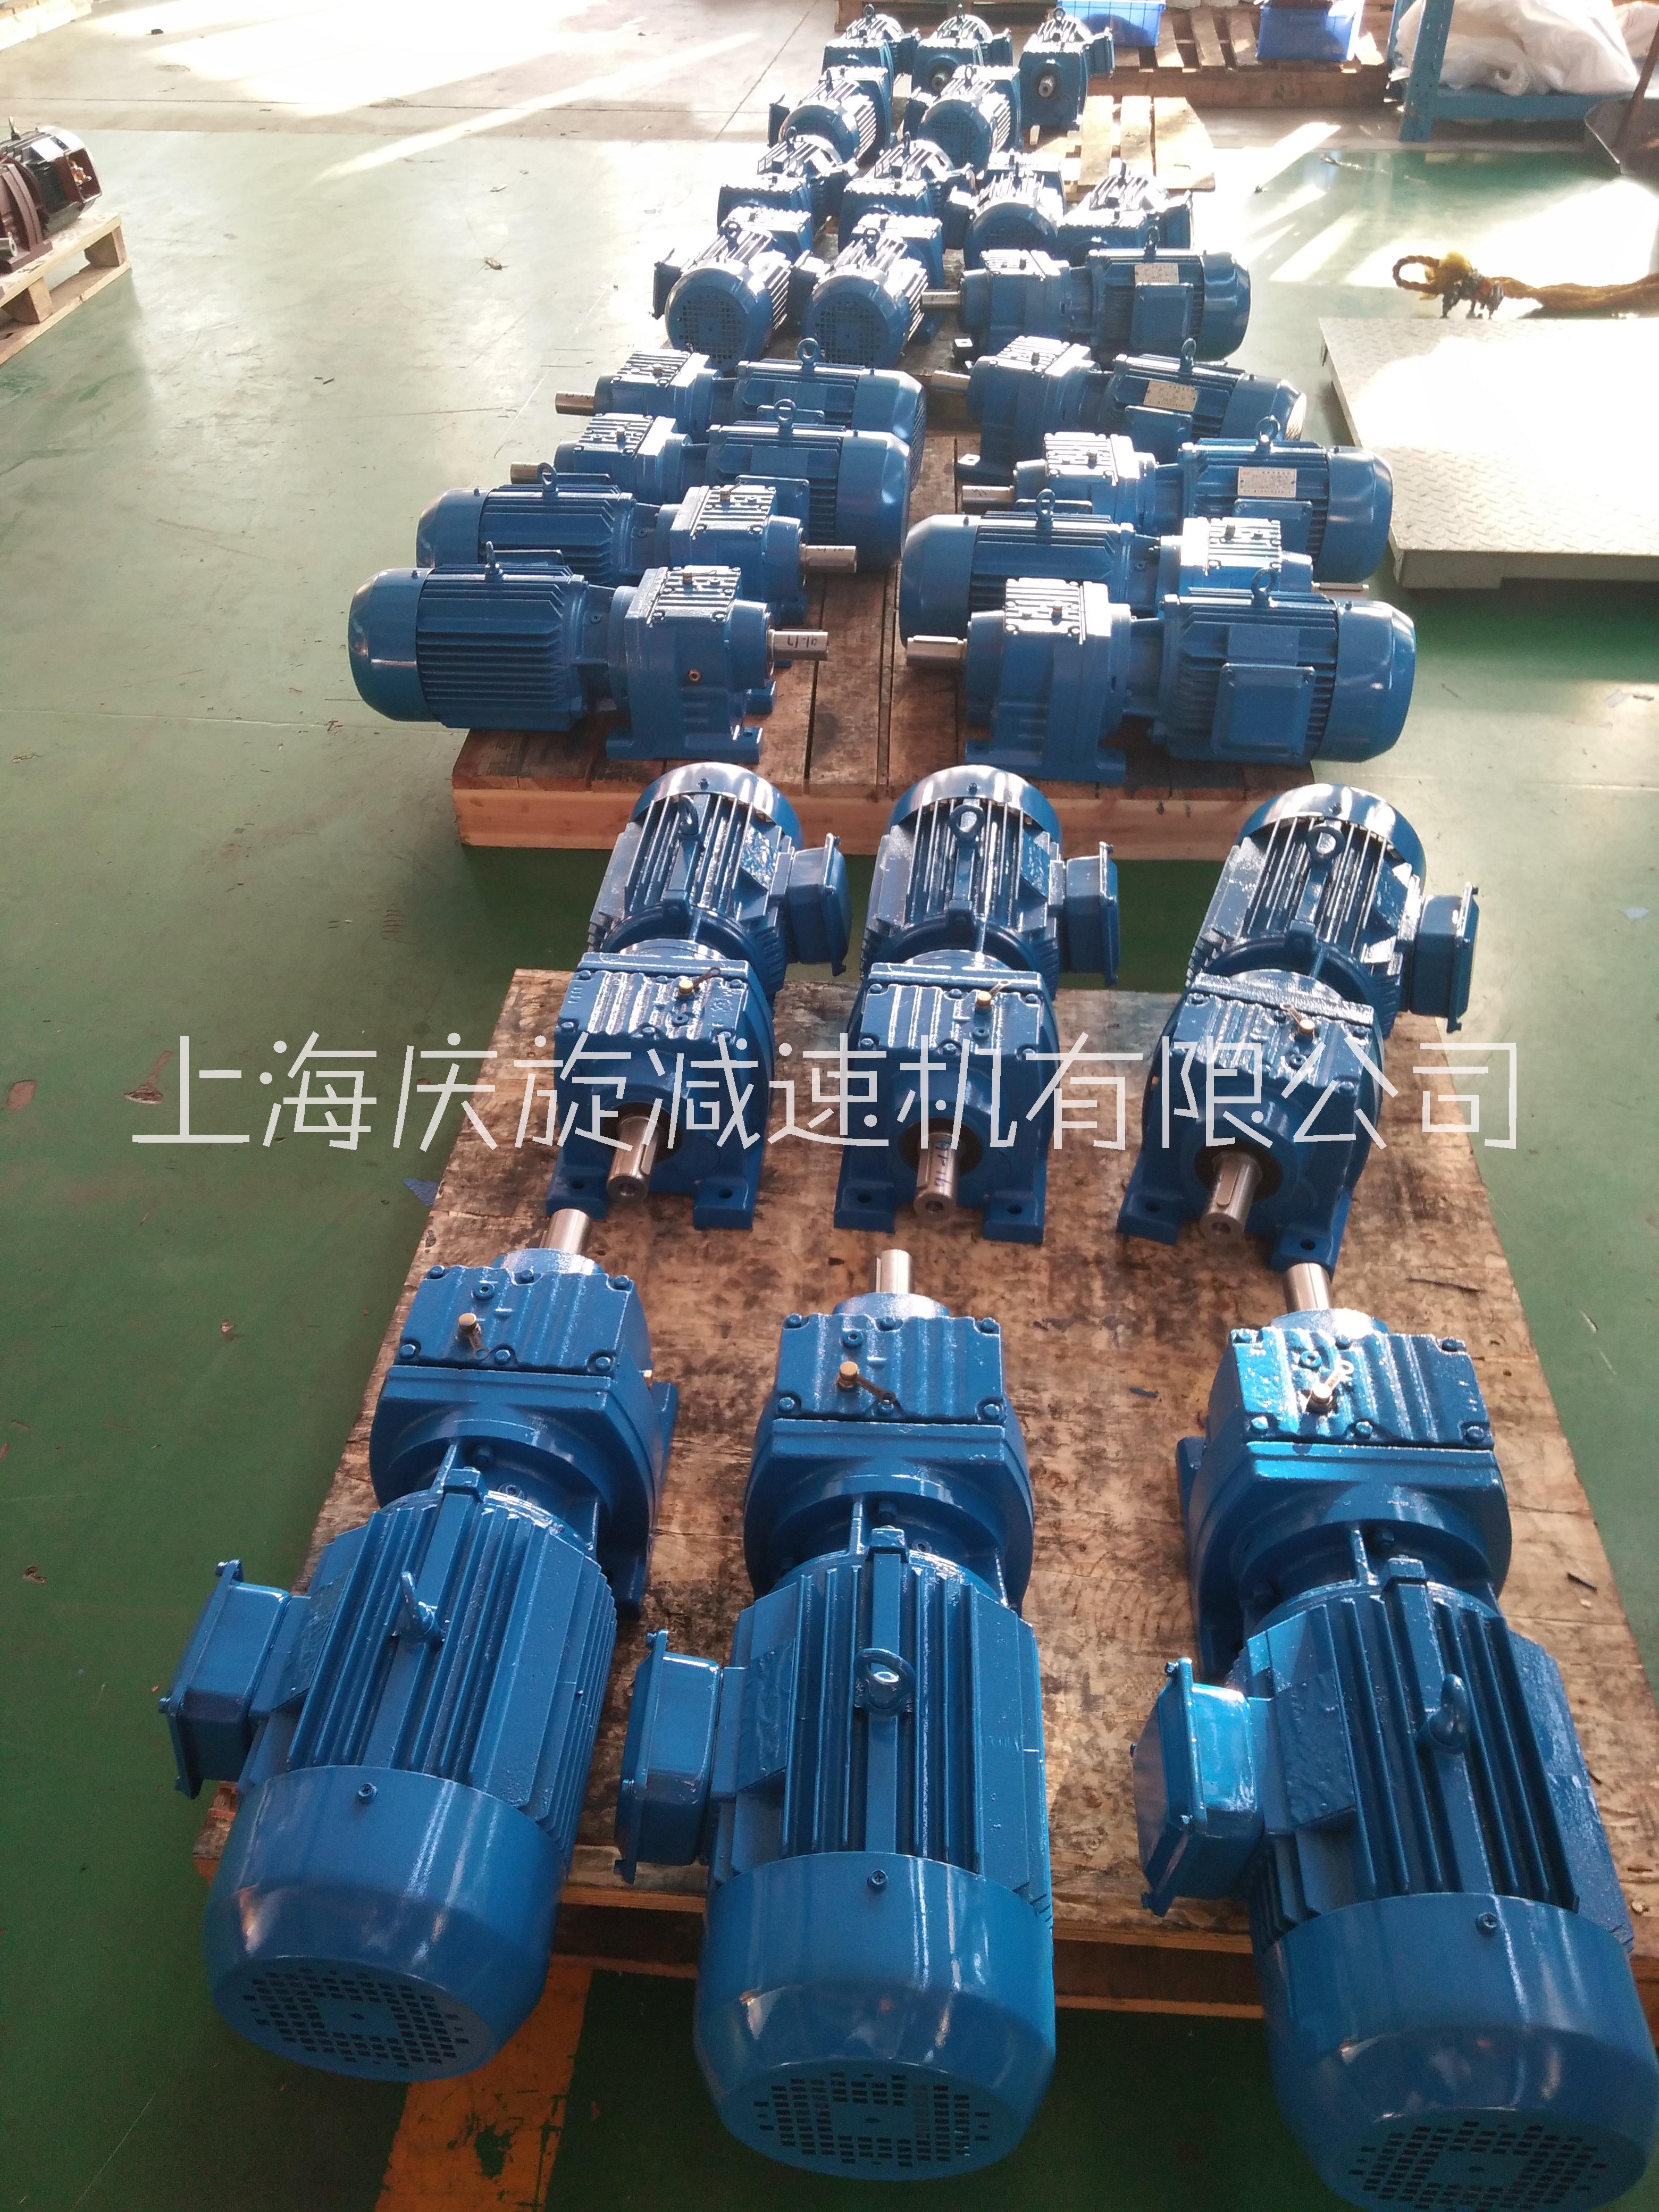 上海MB无级变速机系列生产厂家报价哪家好-MB系列供应商价格图片